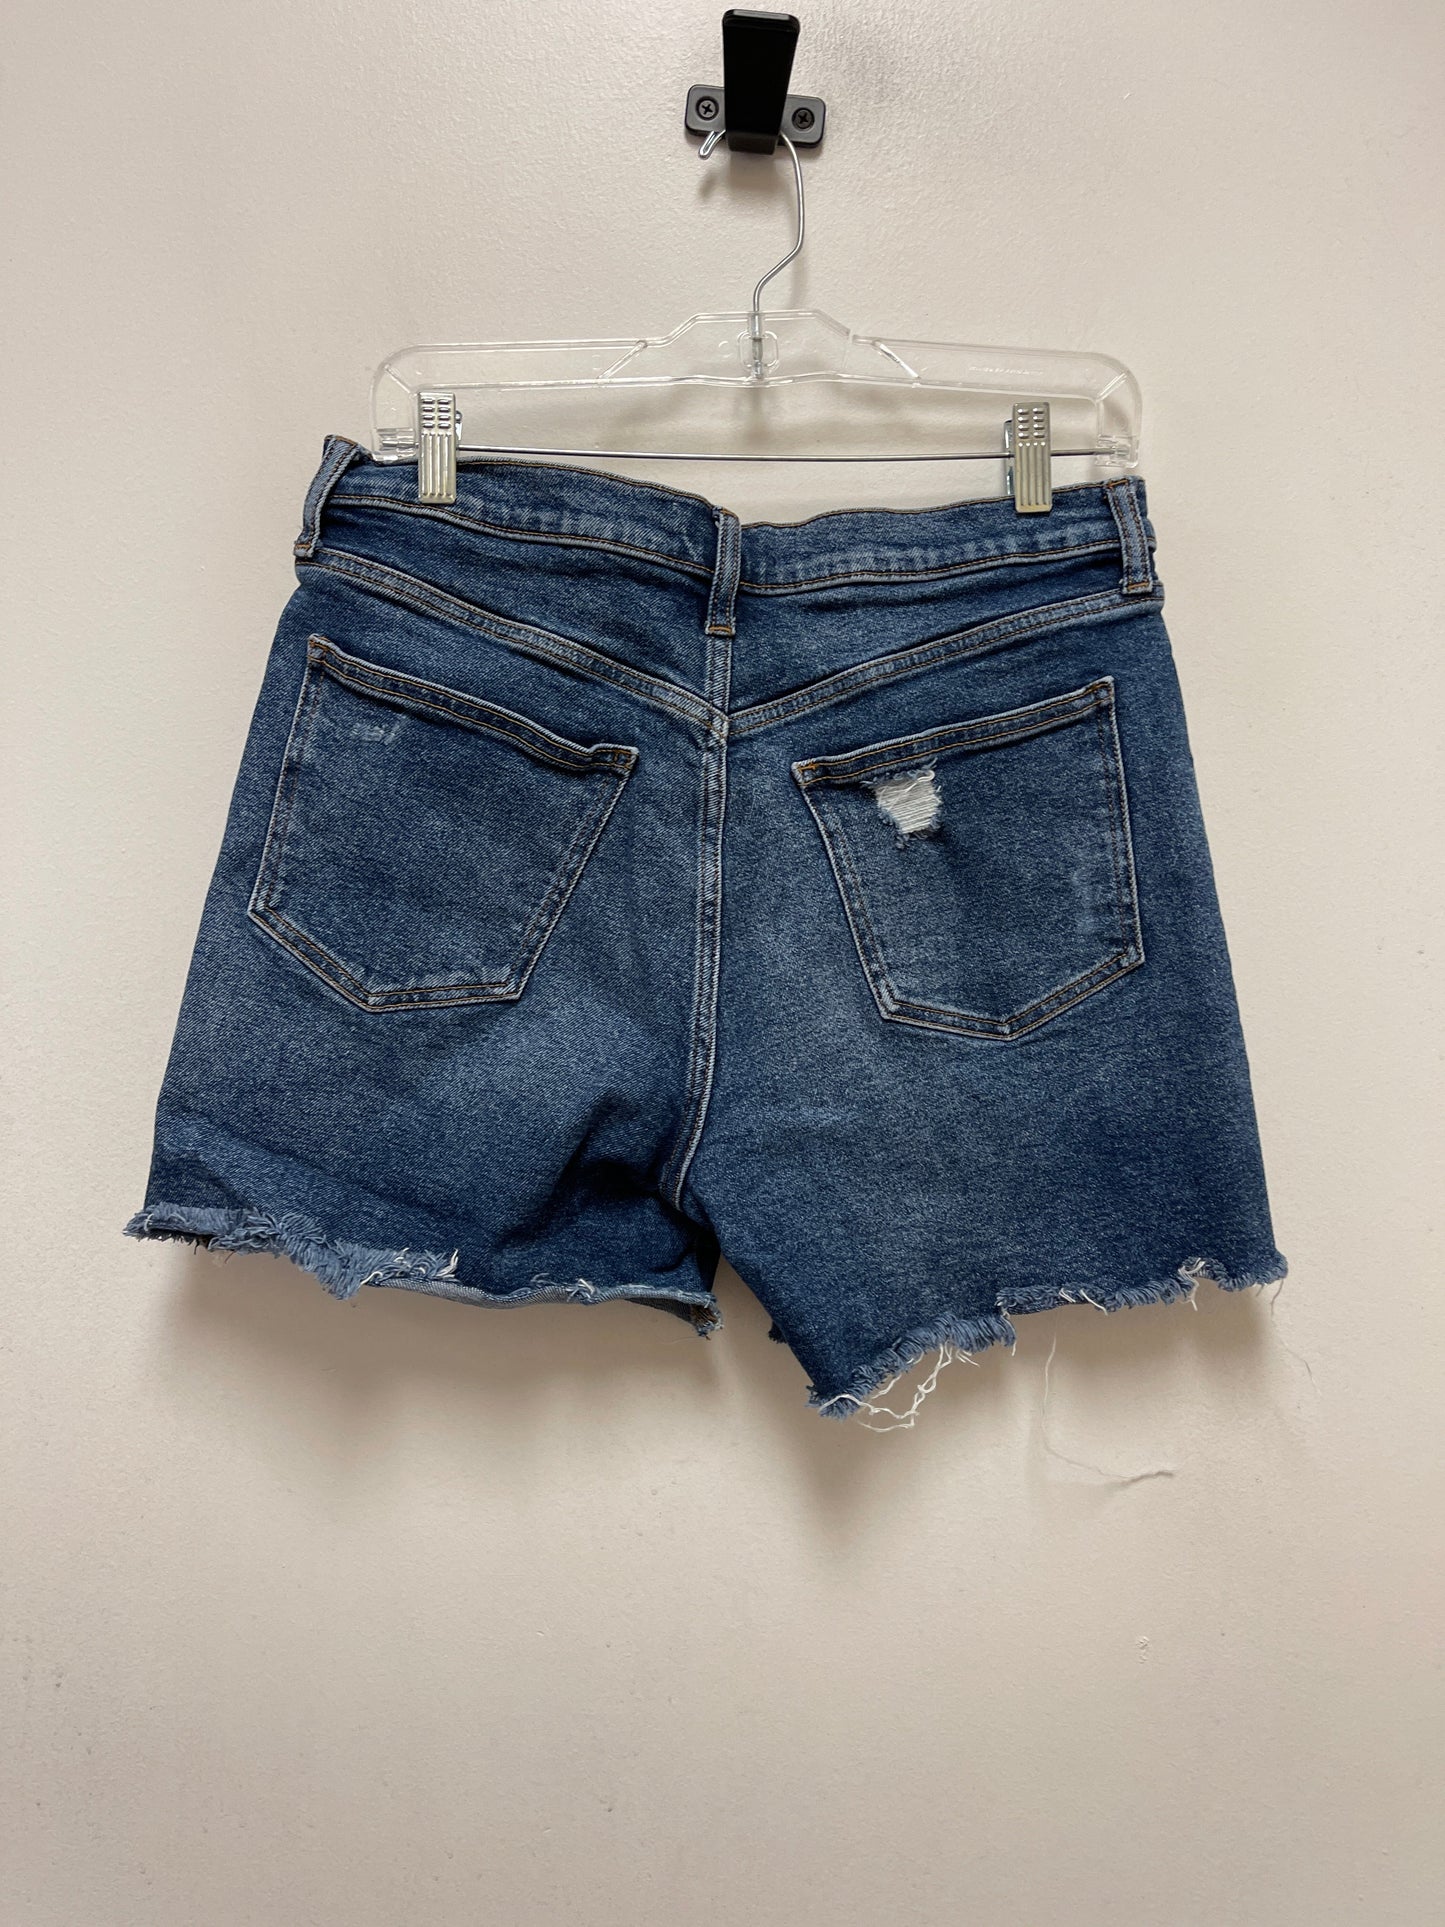 Blue Denim Shorts Gap, Size 10